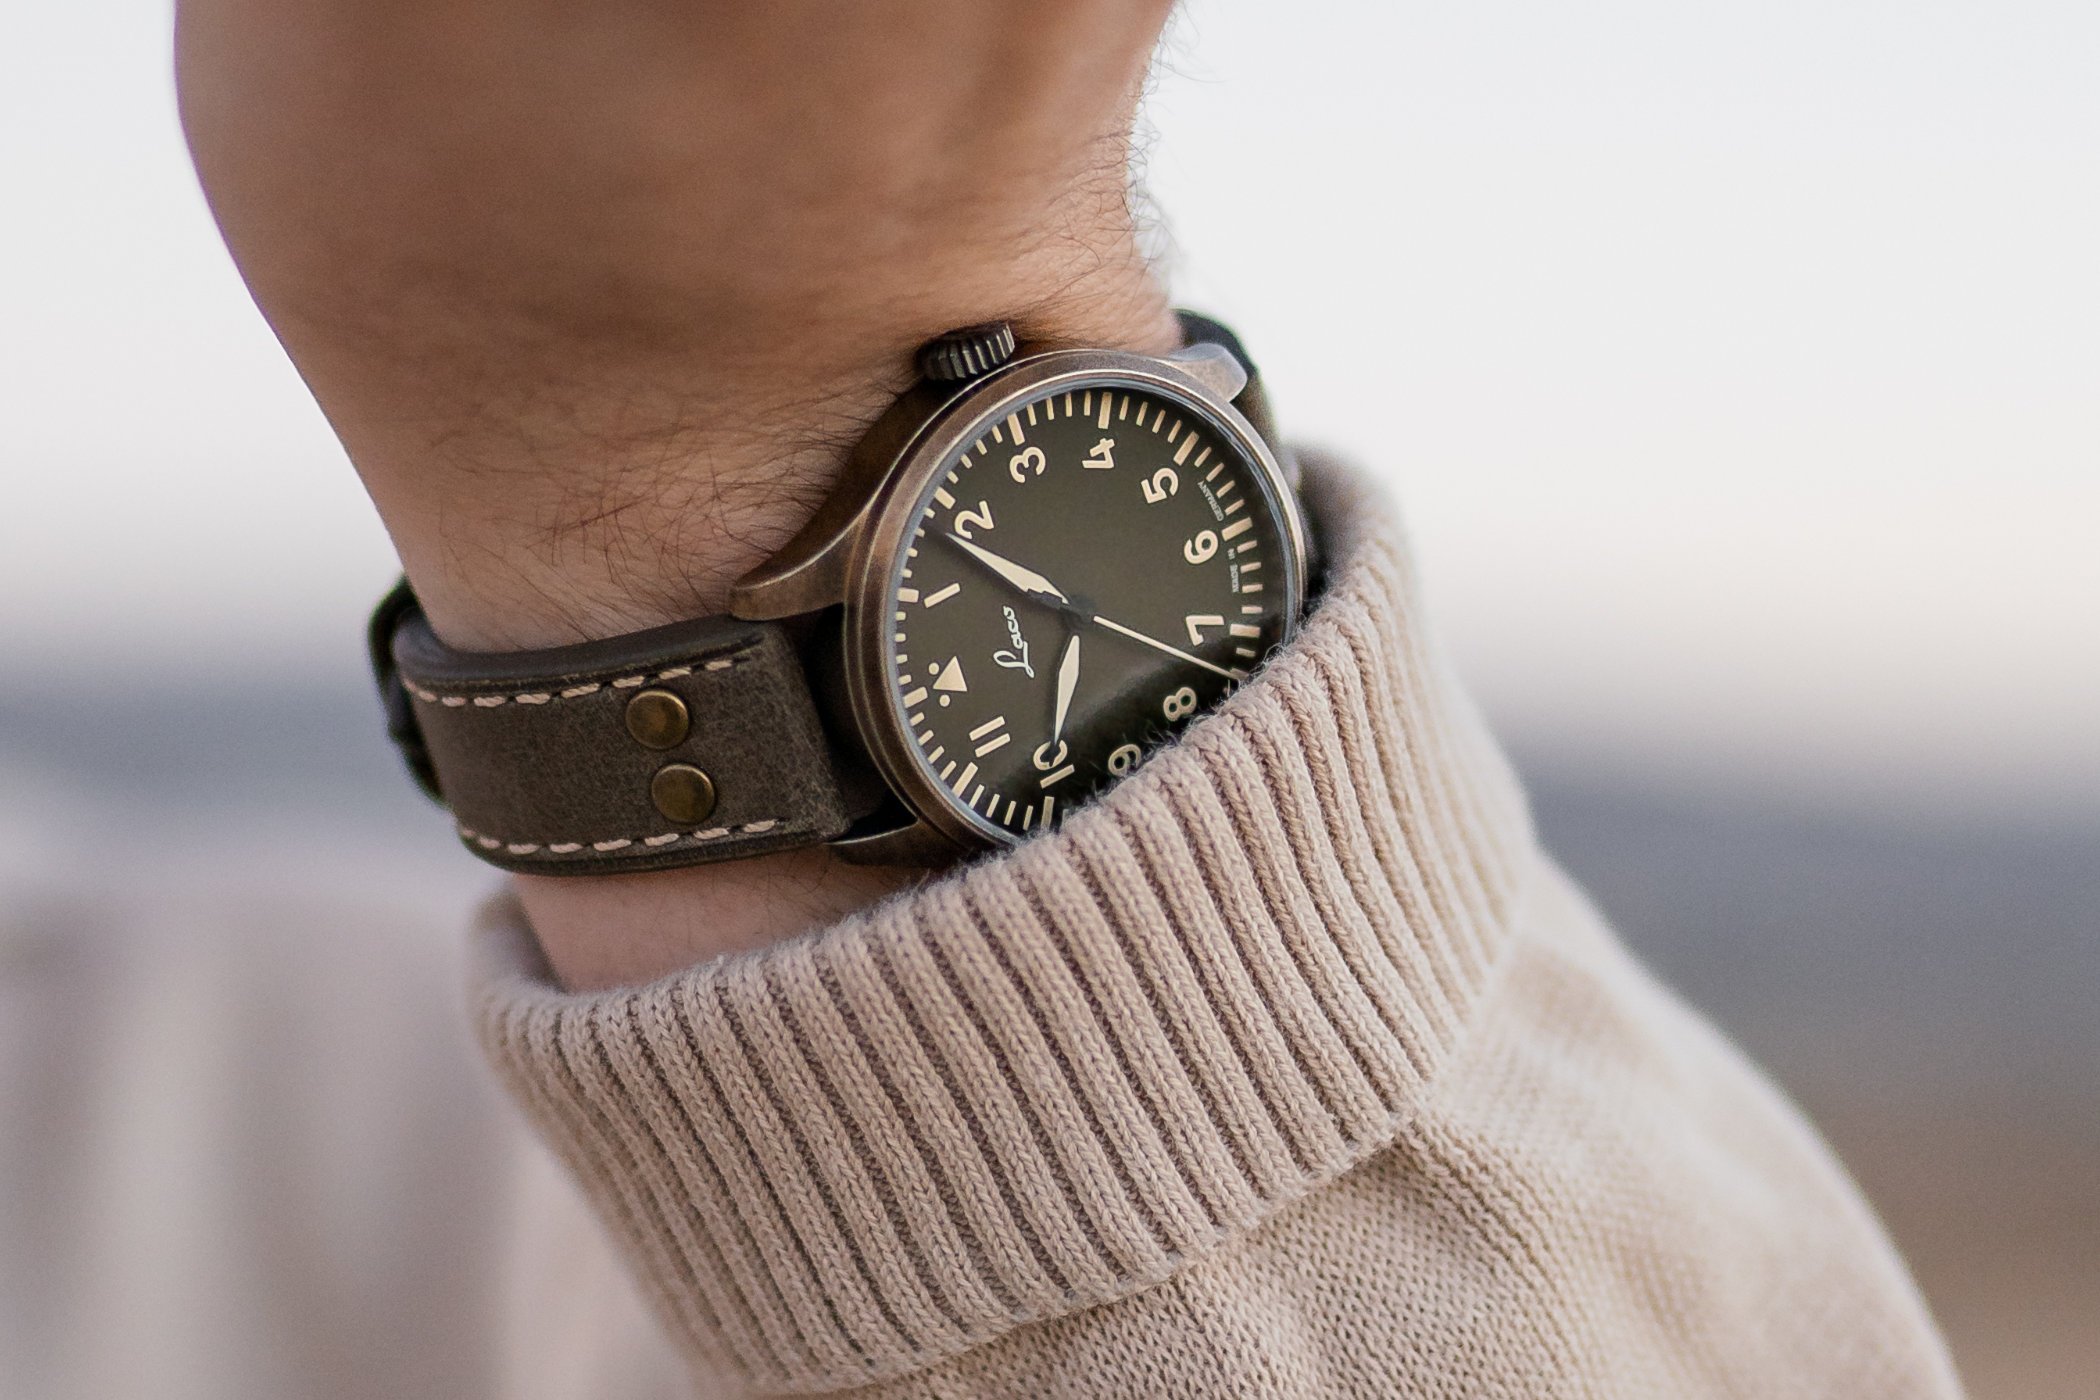 Представляем новую модель Laco Oliv 39 - классно выглядящие, недорогие часы с исторической актуальностью